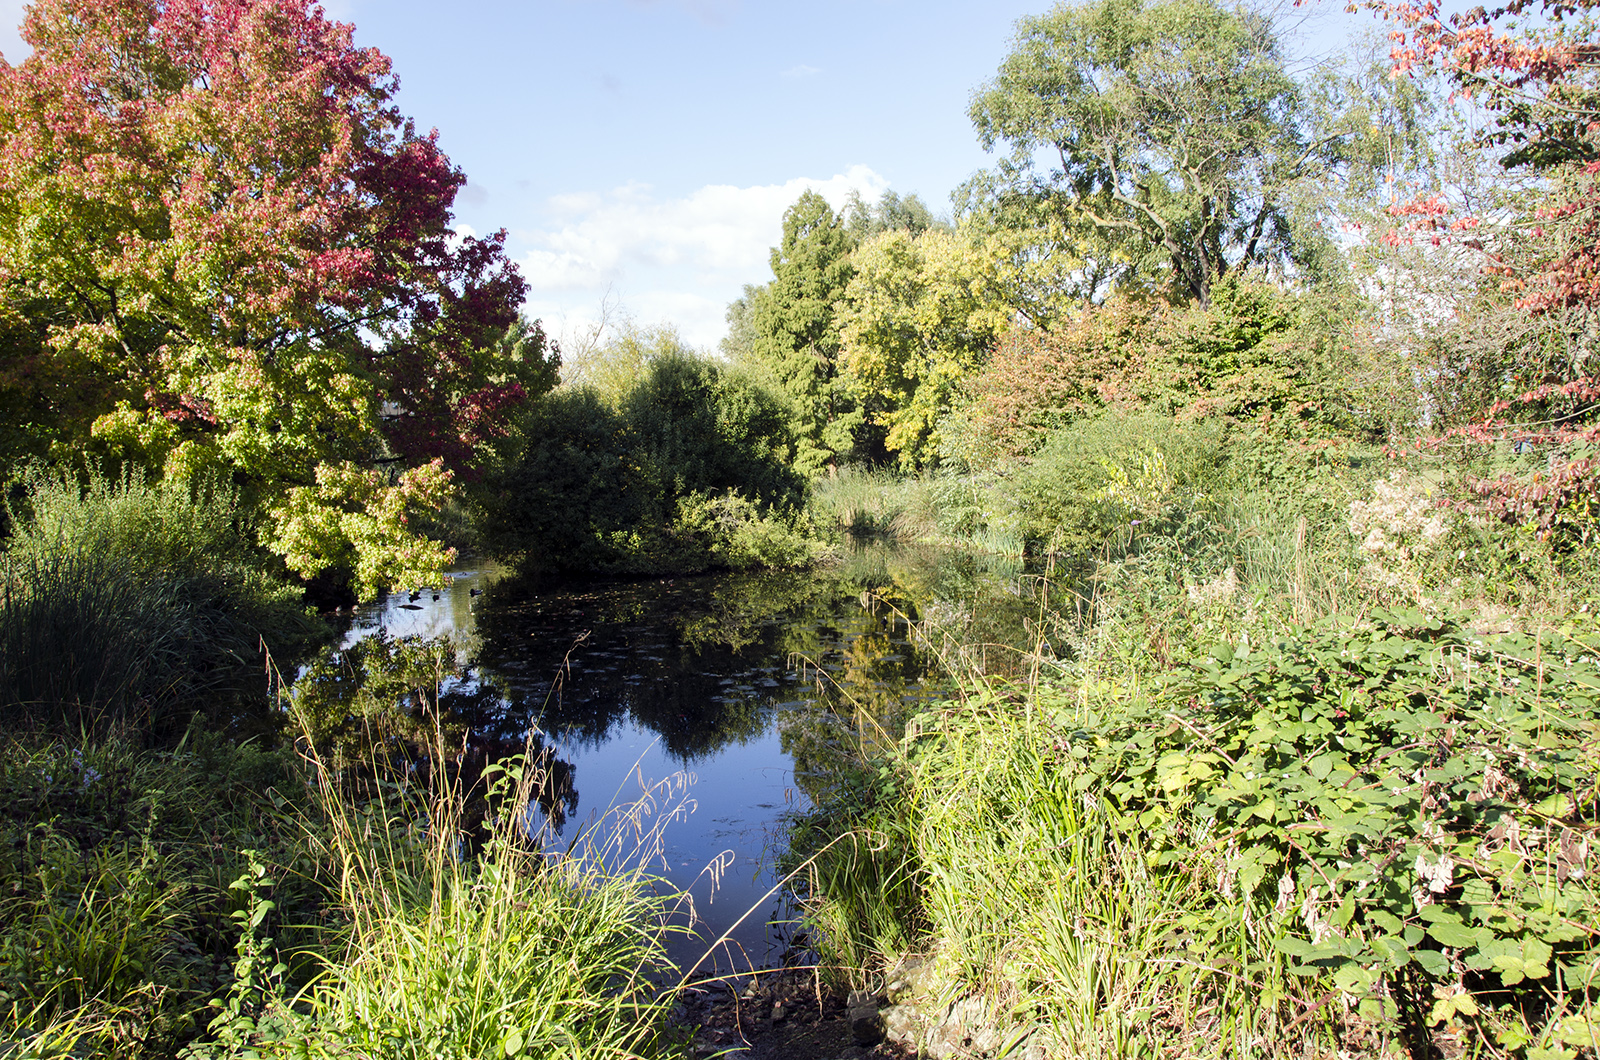 2016-10-13-Lambeth_Brockwell-Park_Autumn_Landscape-Ponds-showing-autumn-colour